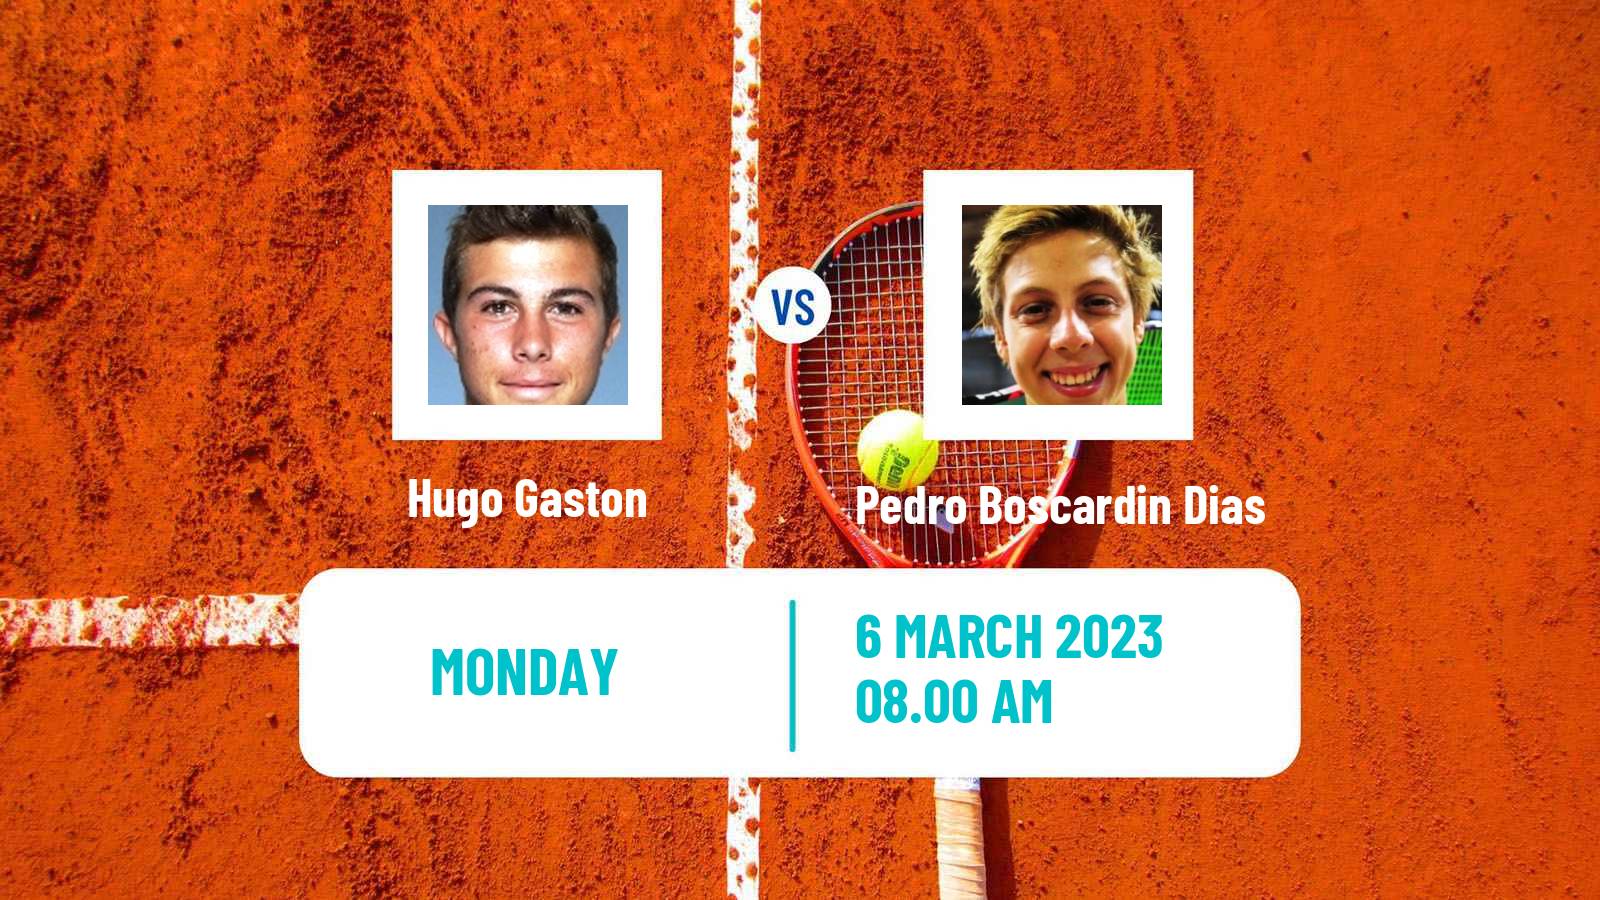 Tennis ATP Challenger Hugo Gaston - Pedro Boscardin Dias